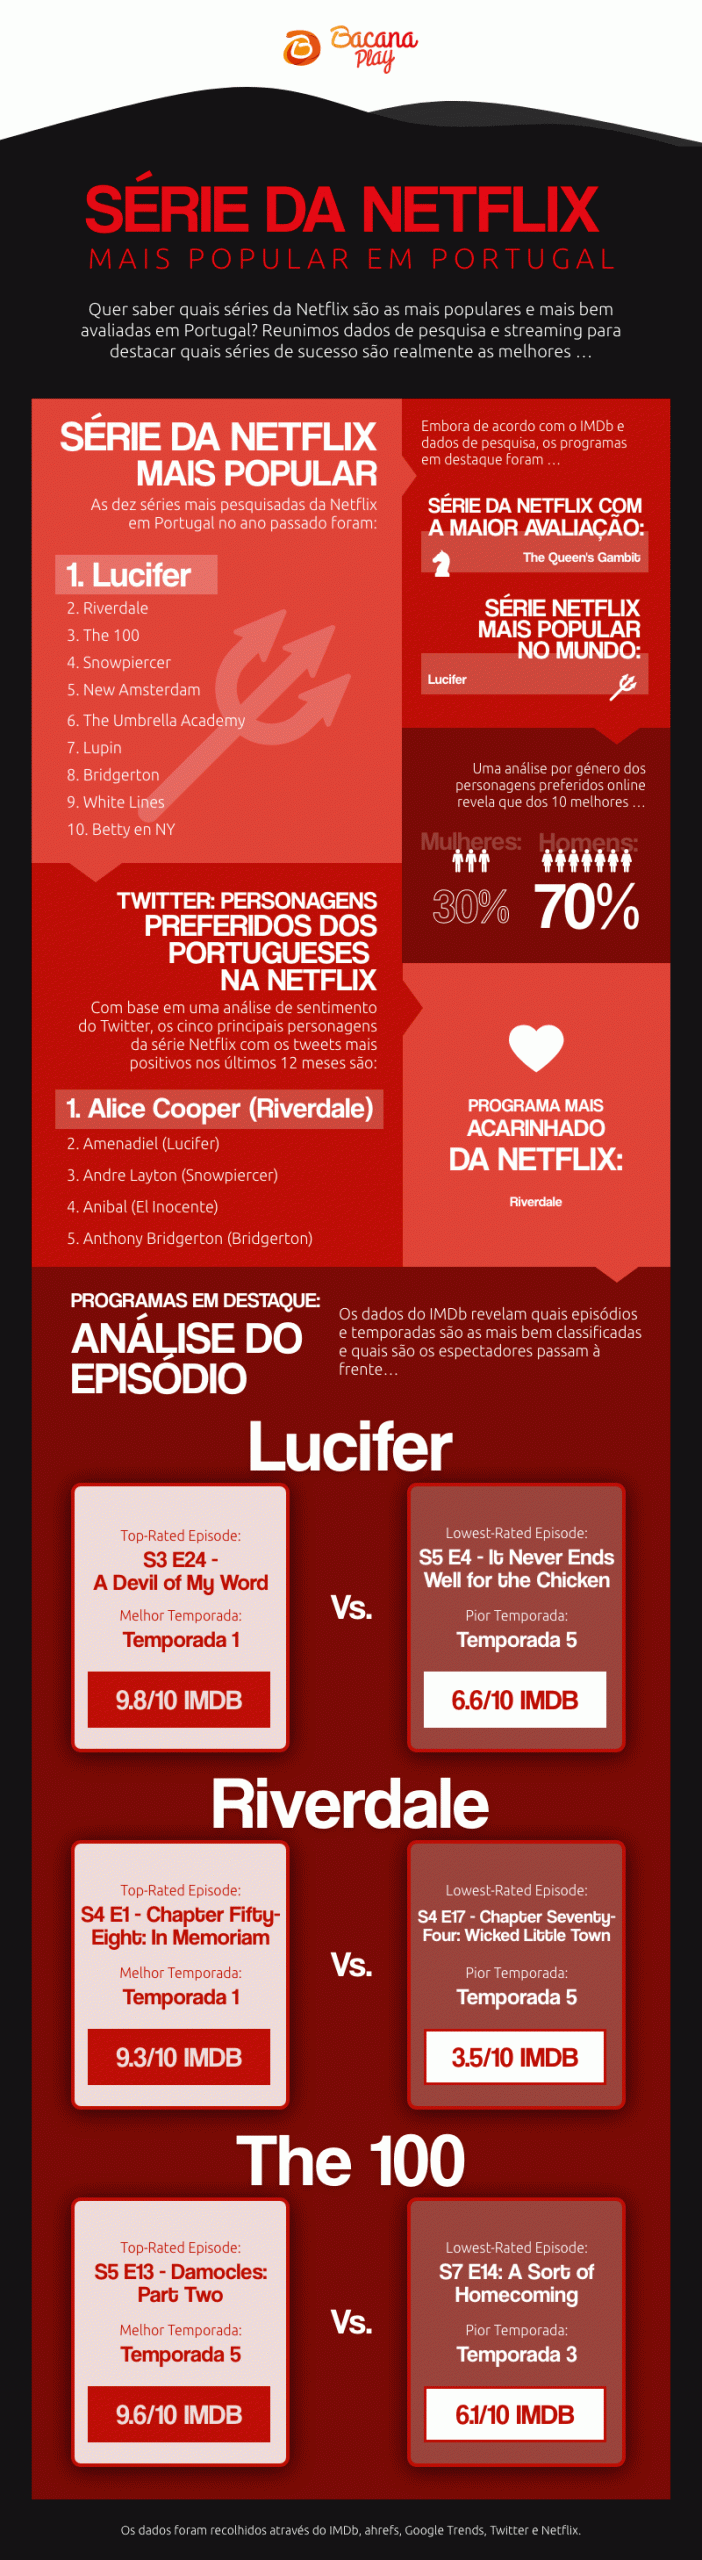 Most-Popular-Portuguese-Netflix-Series